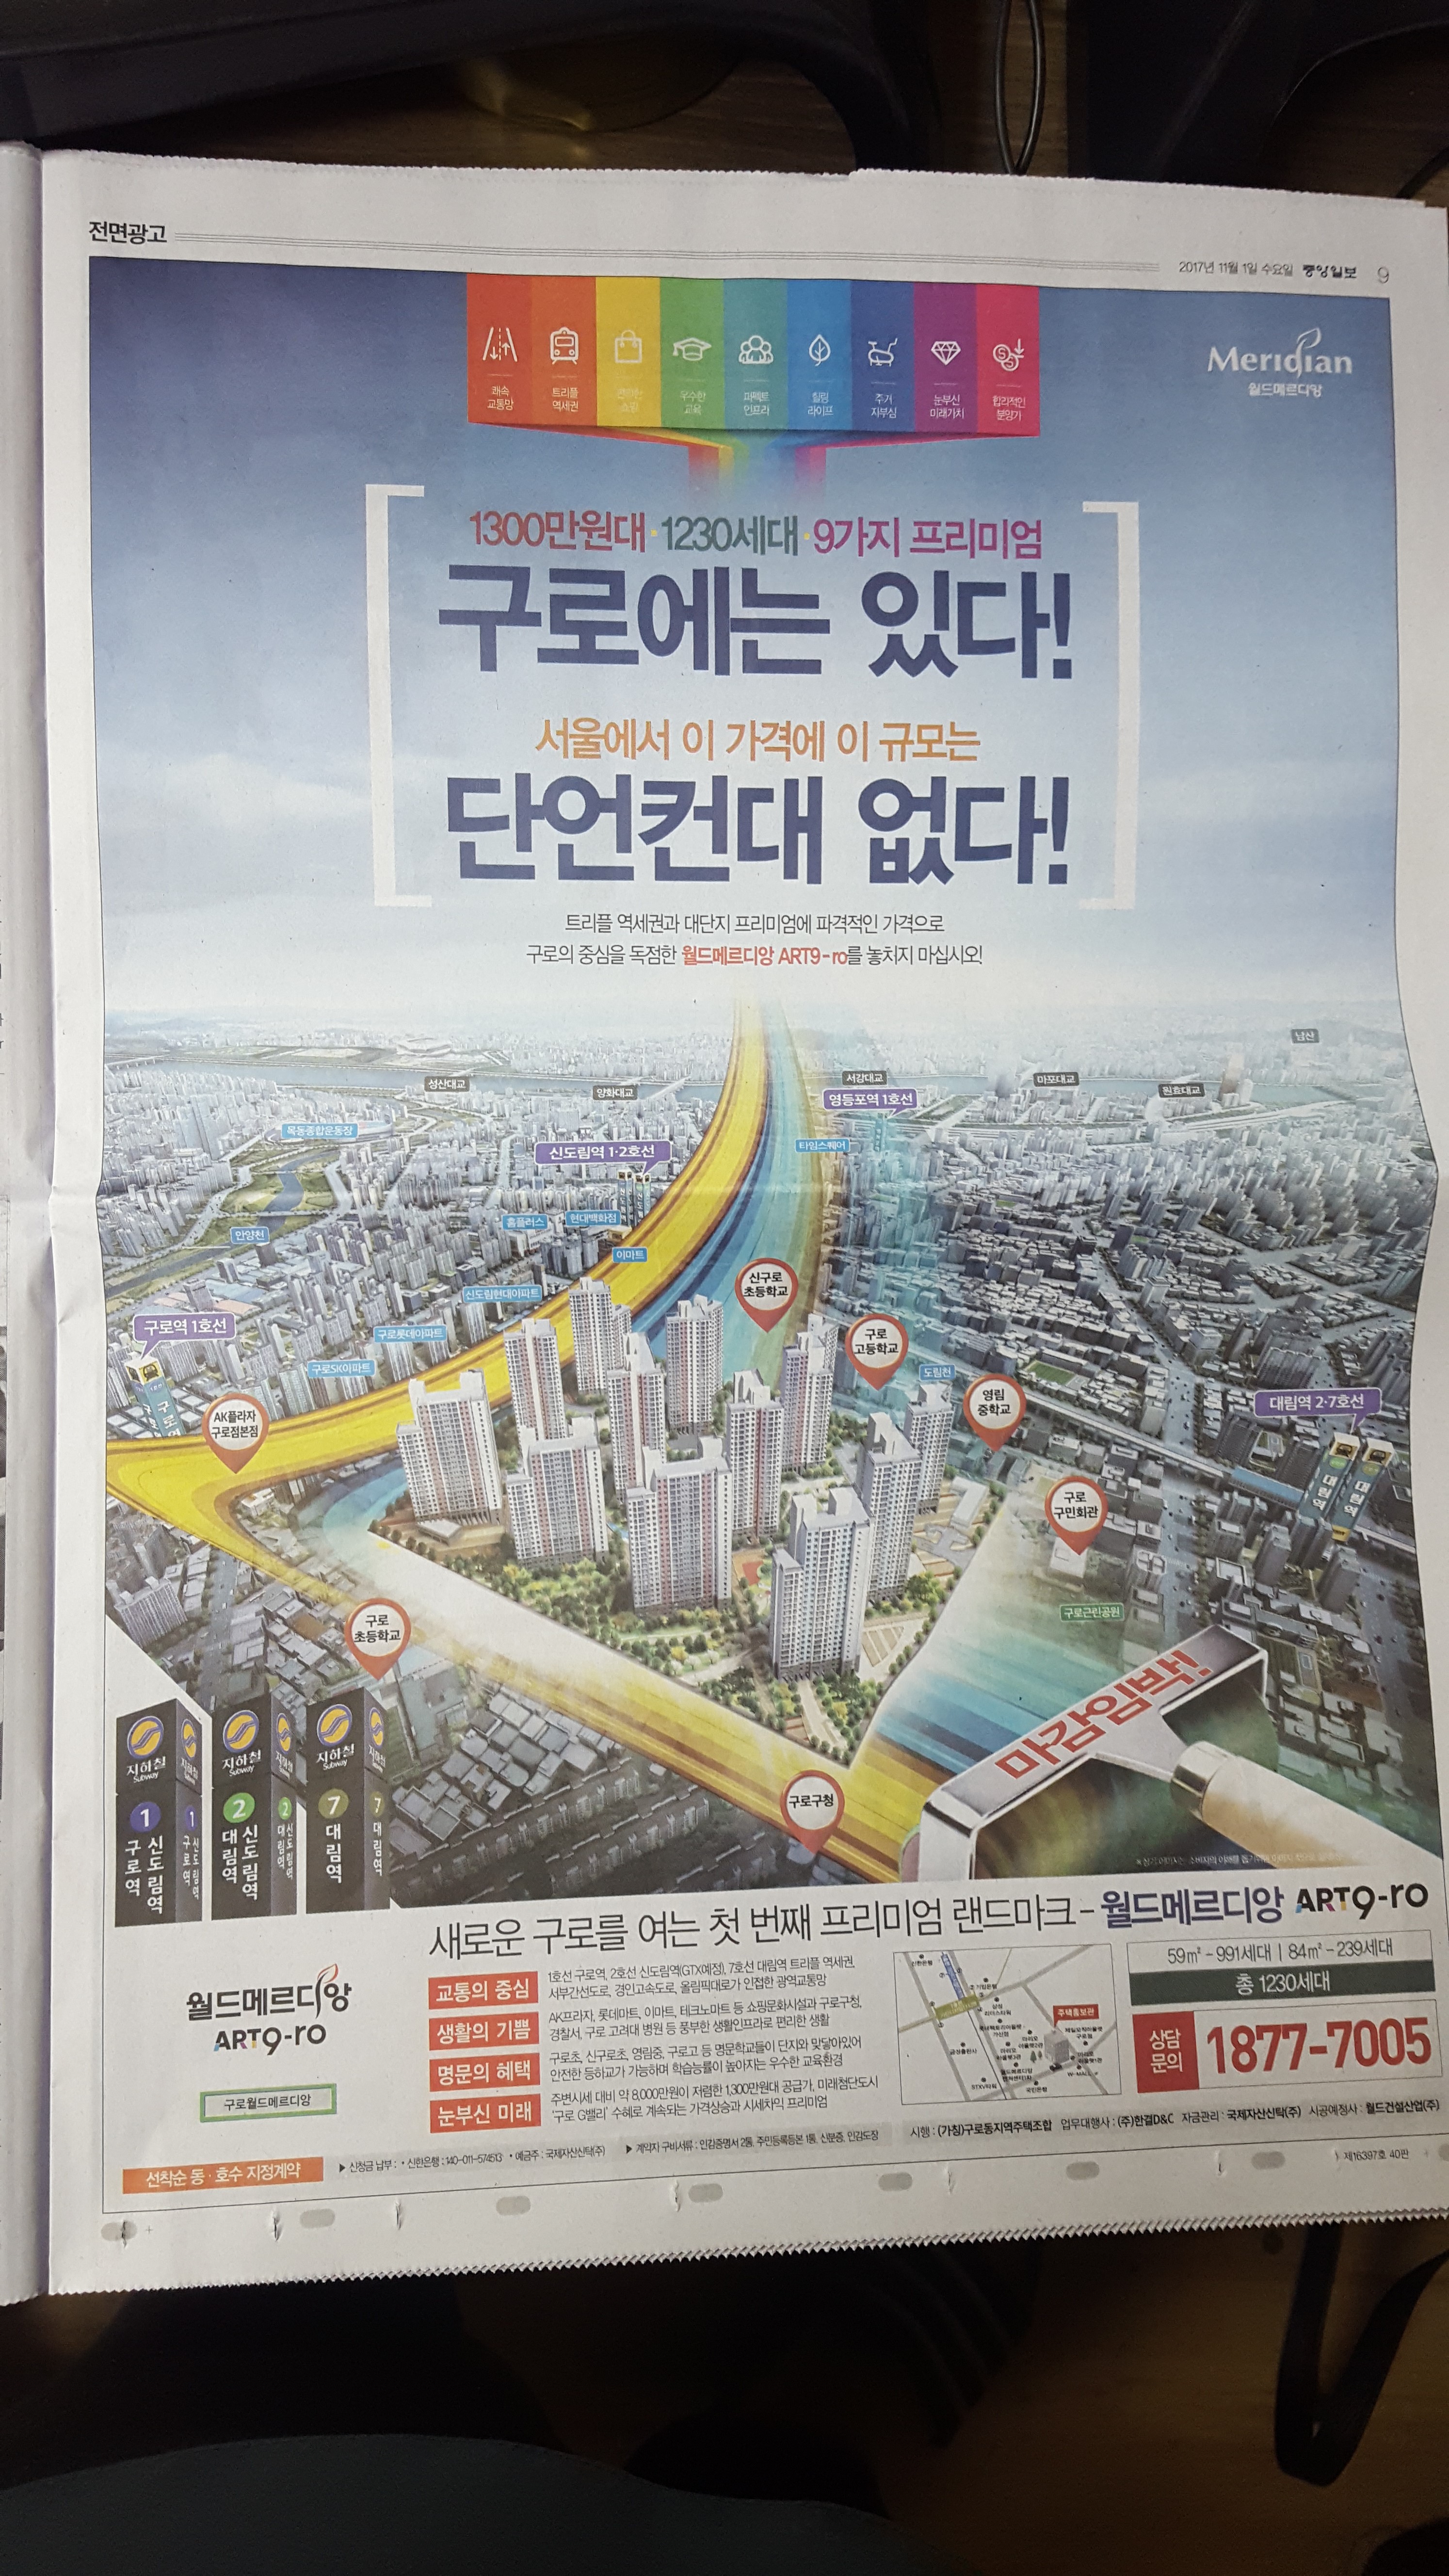 중앙일보 9 월드메르디앙.jpg